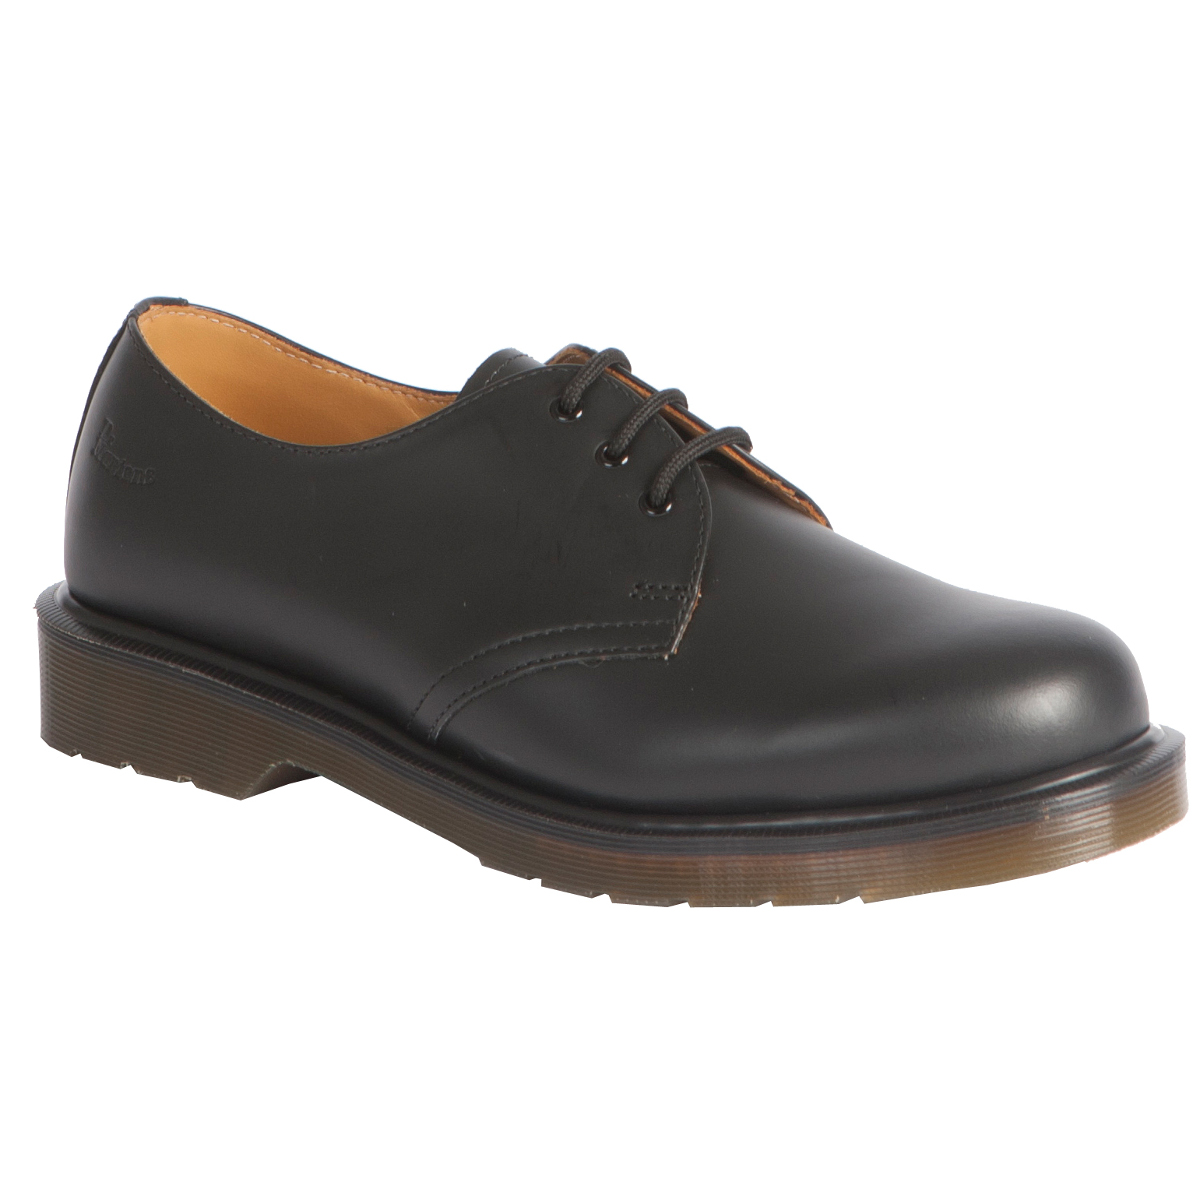 Dr Martens 1461 PW 3 Eye Shoe - Pediwear Footwear